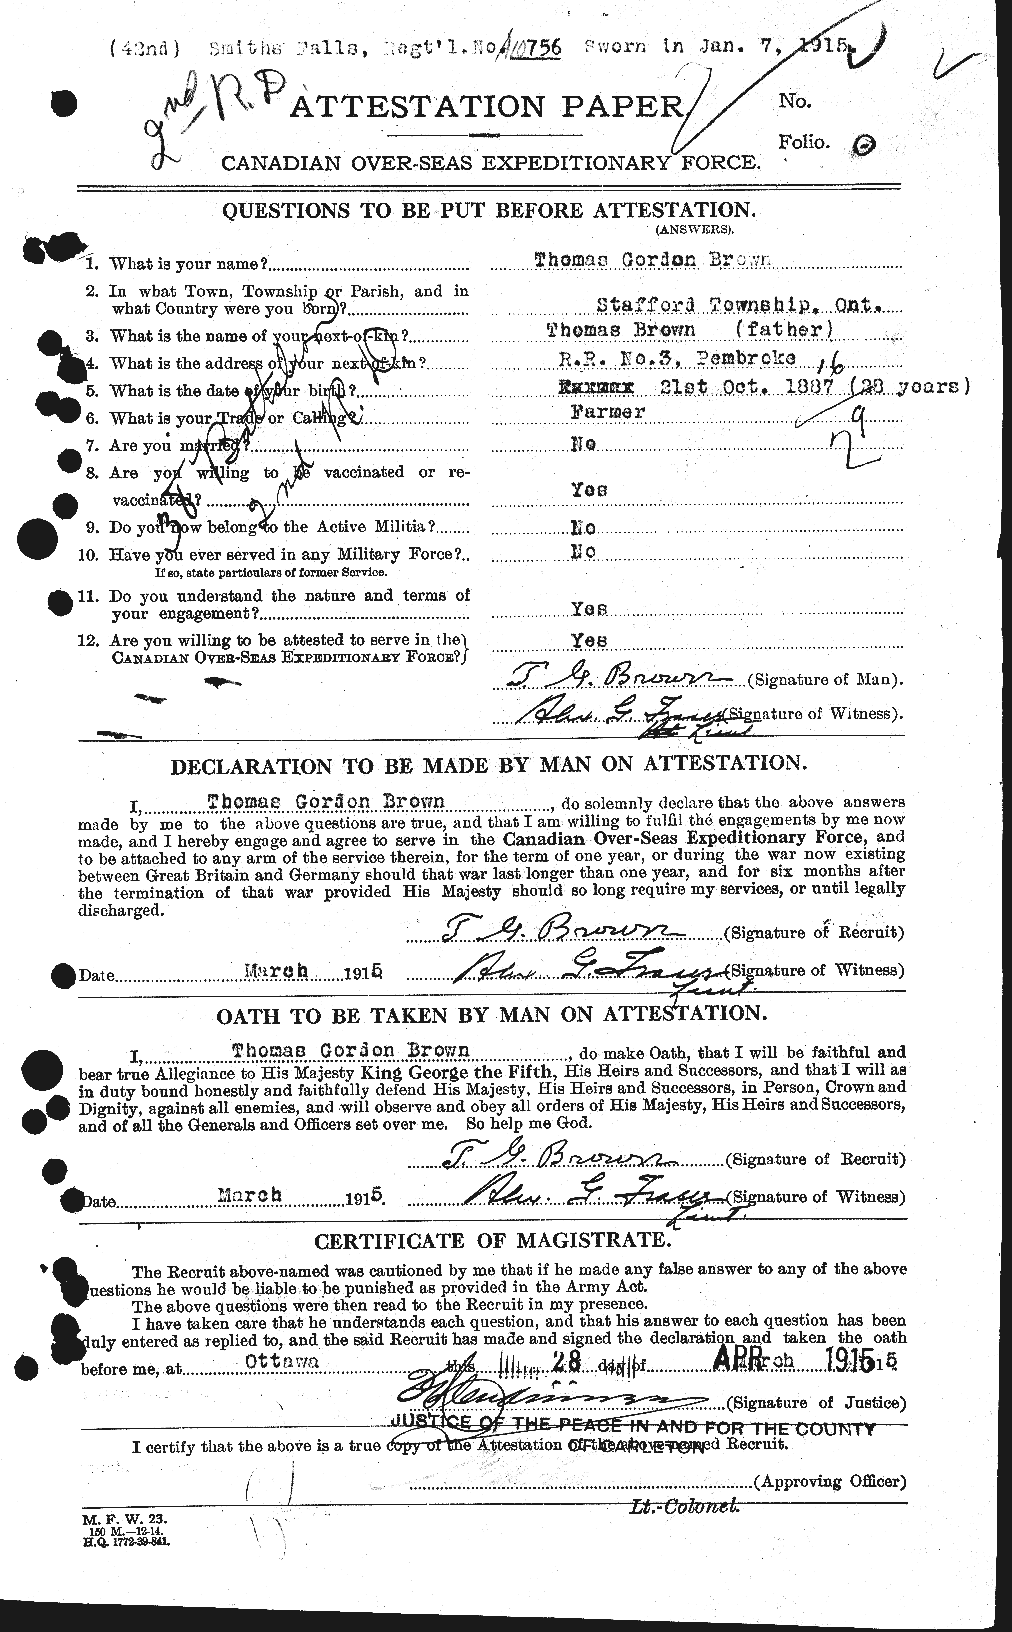 Dossiers du Personnel de la Première Guerre mondiale - CEC 266552a